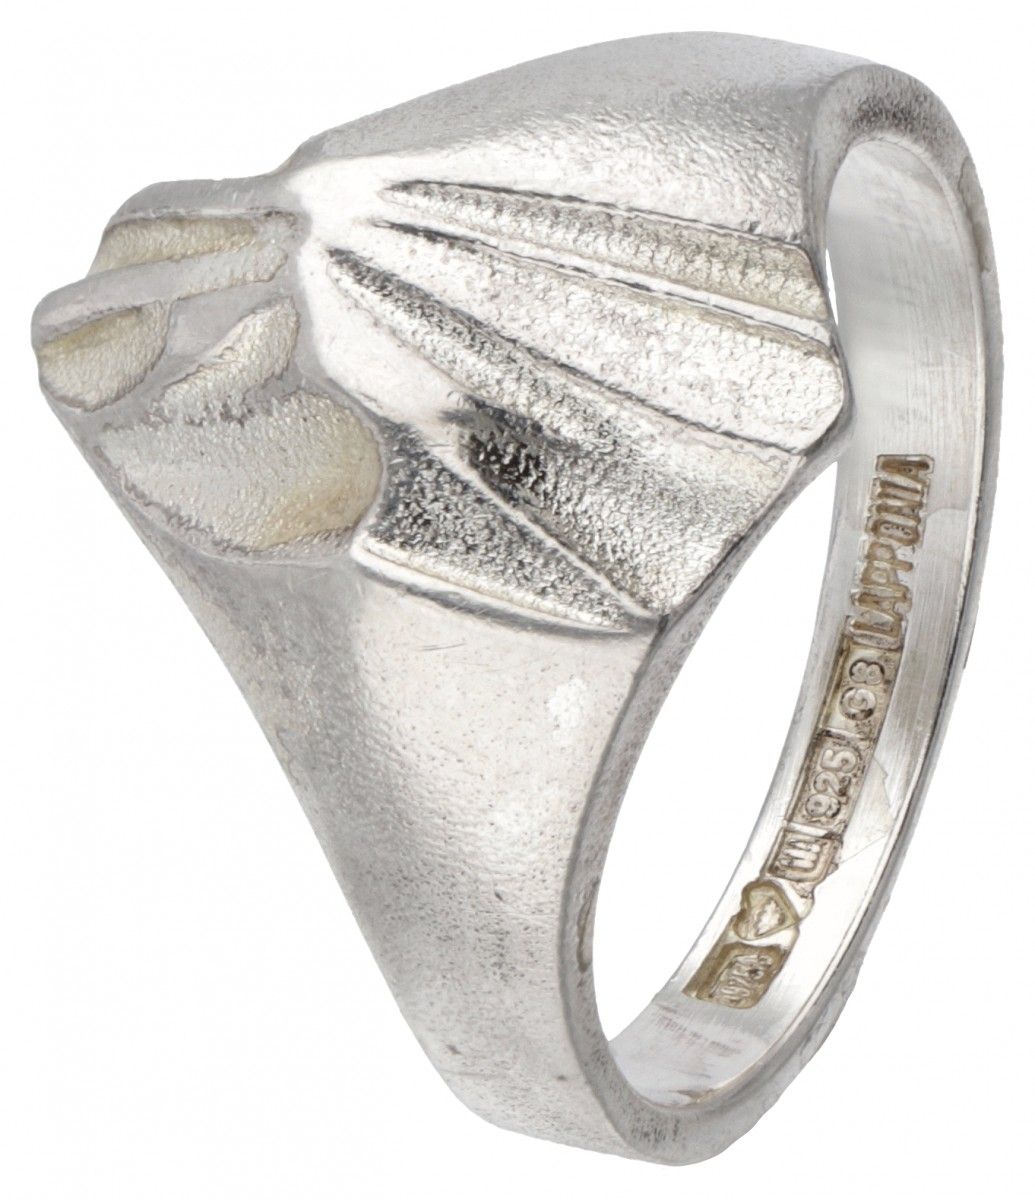 Björn Weckström for Lapponia silver design ring - 925/1000. Hallmarks: 925, nati&hellip;